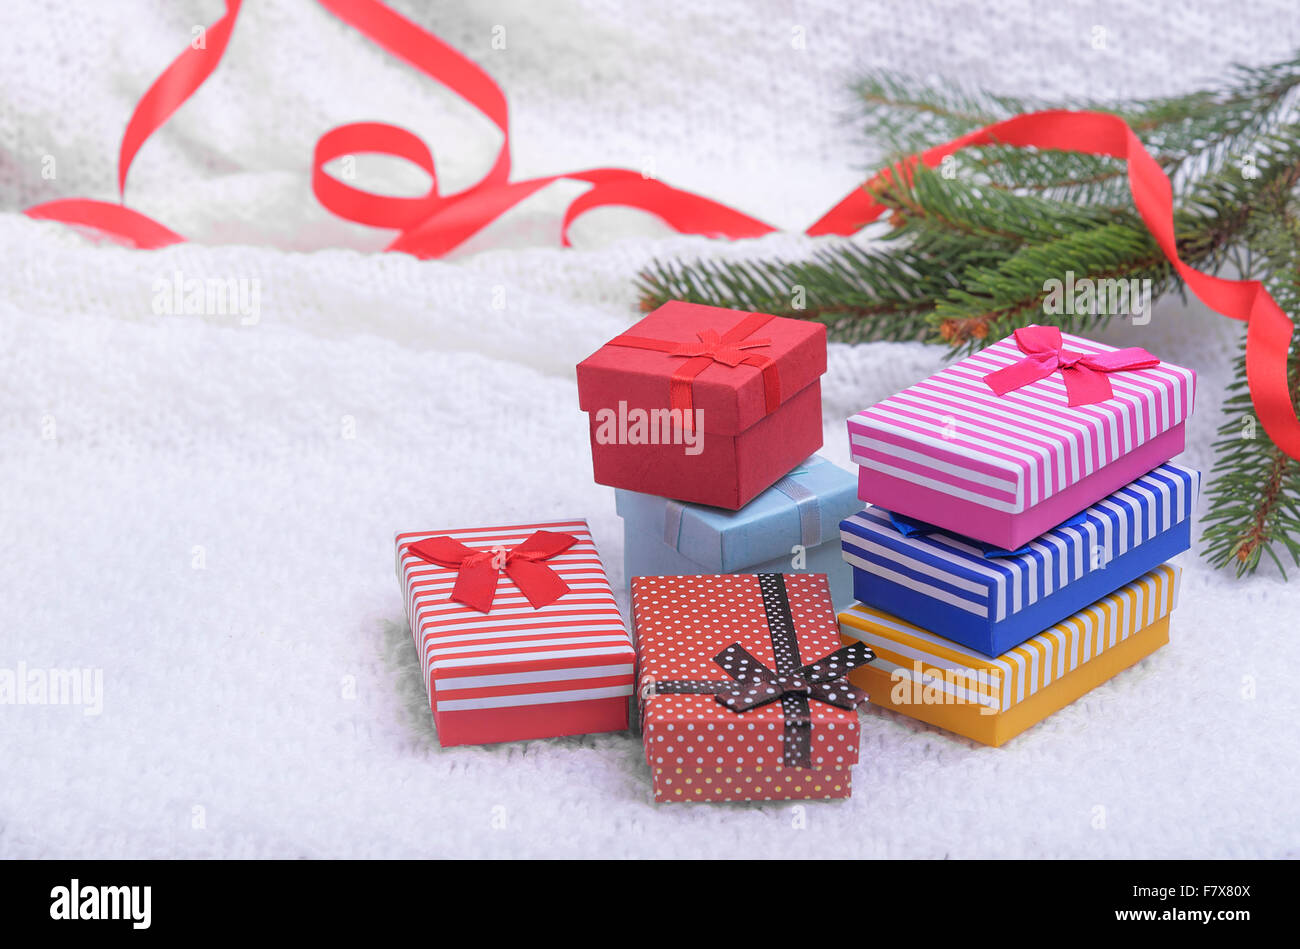 Weihnachtsgeschenke auf einem weißen Karo. Stockfoto